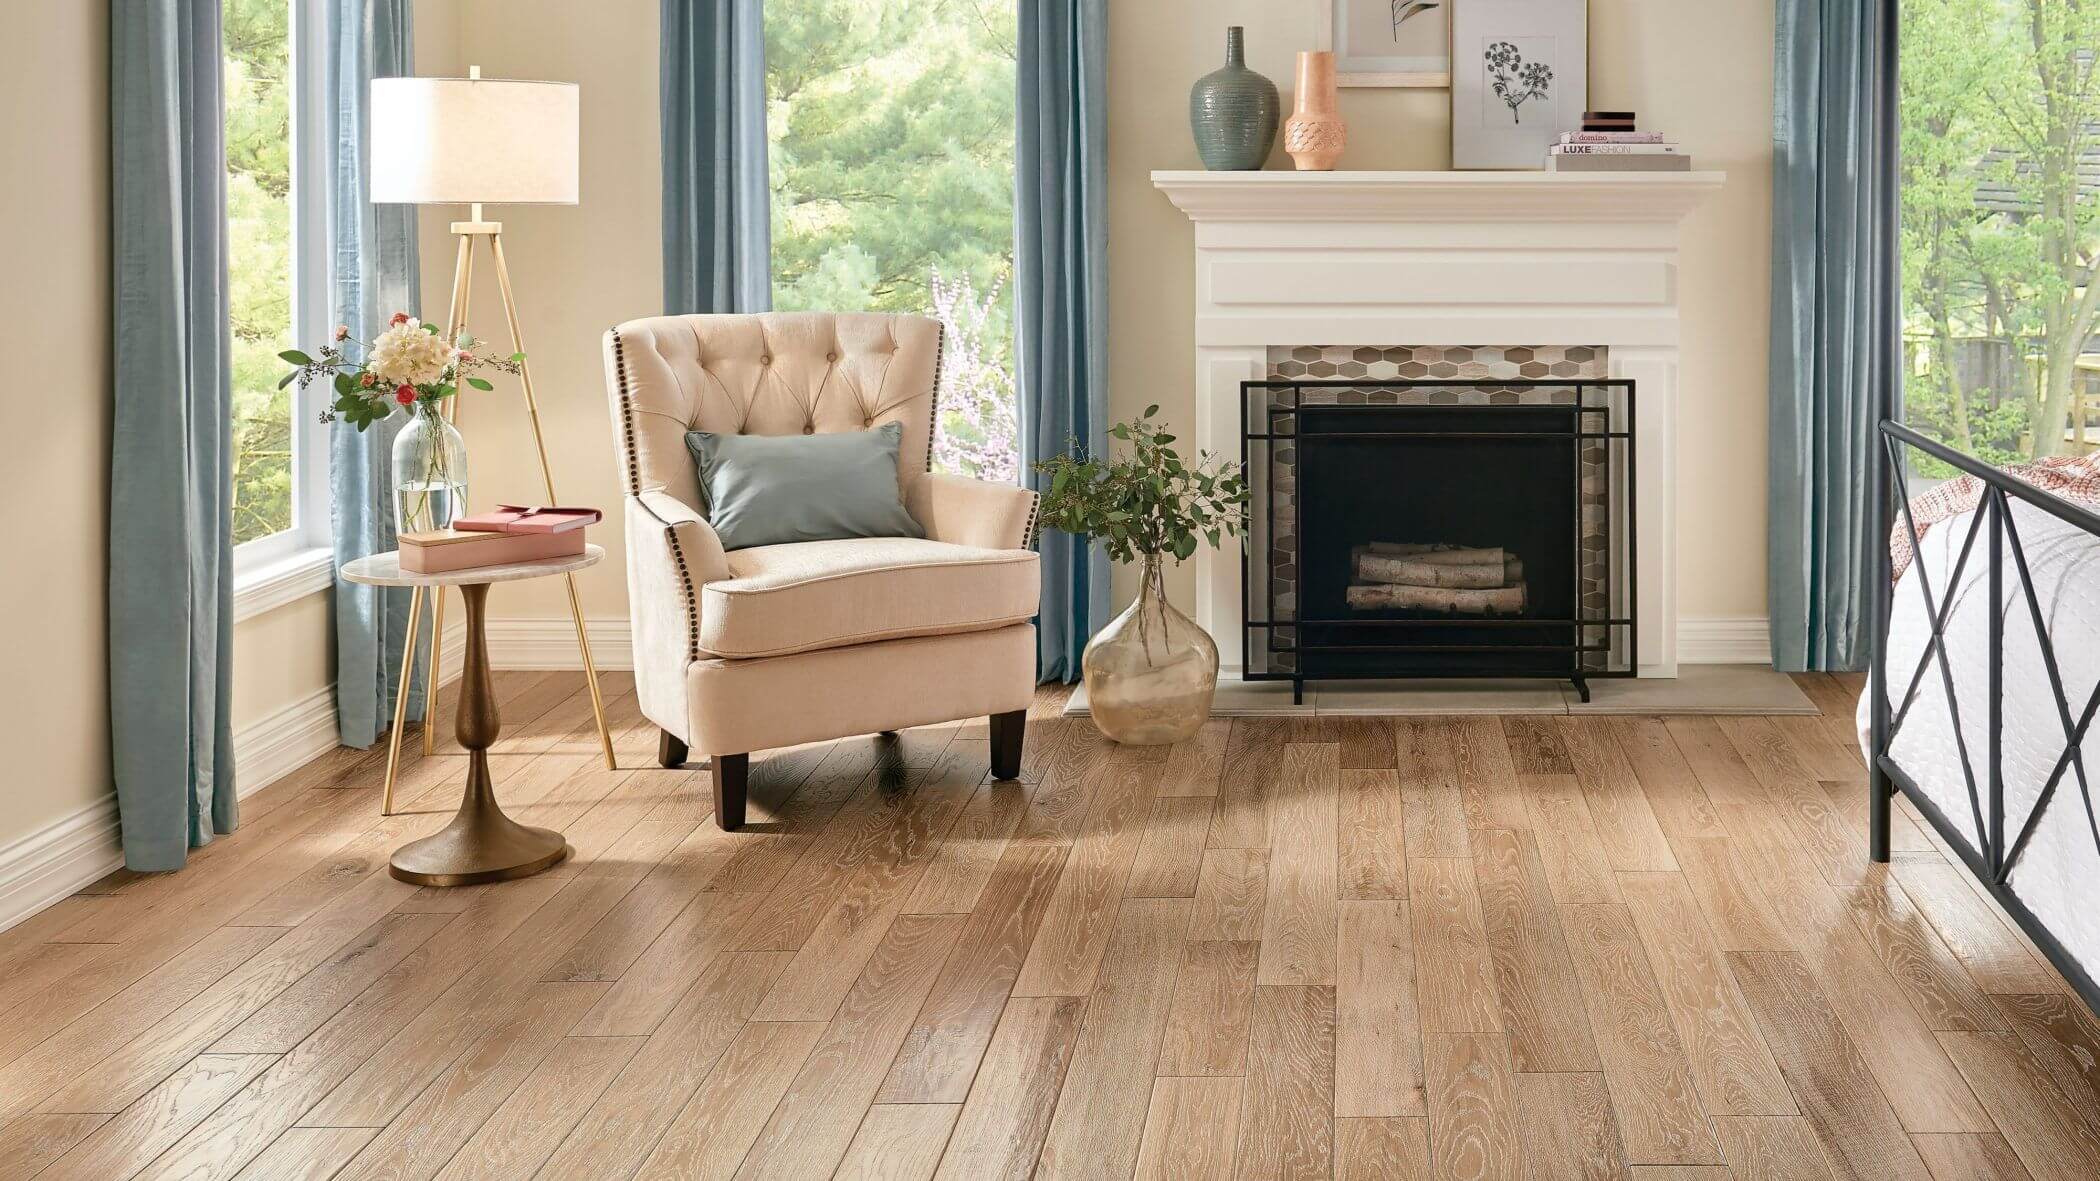 Solid Oak Wood Flooring In Living Room